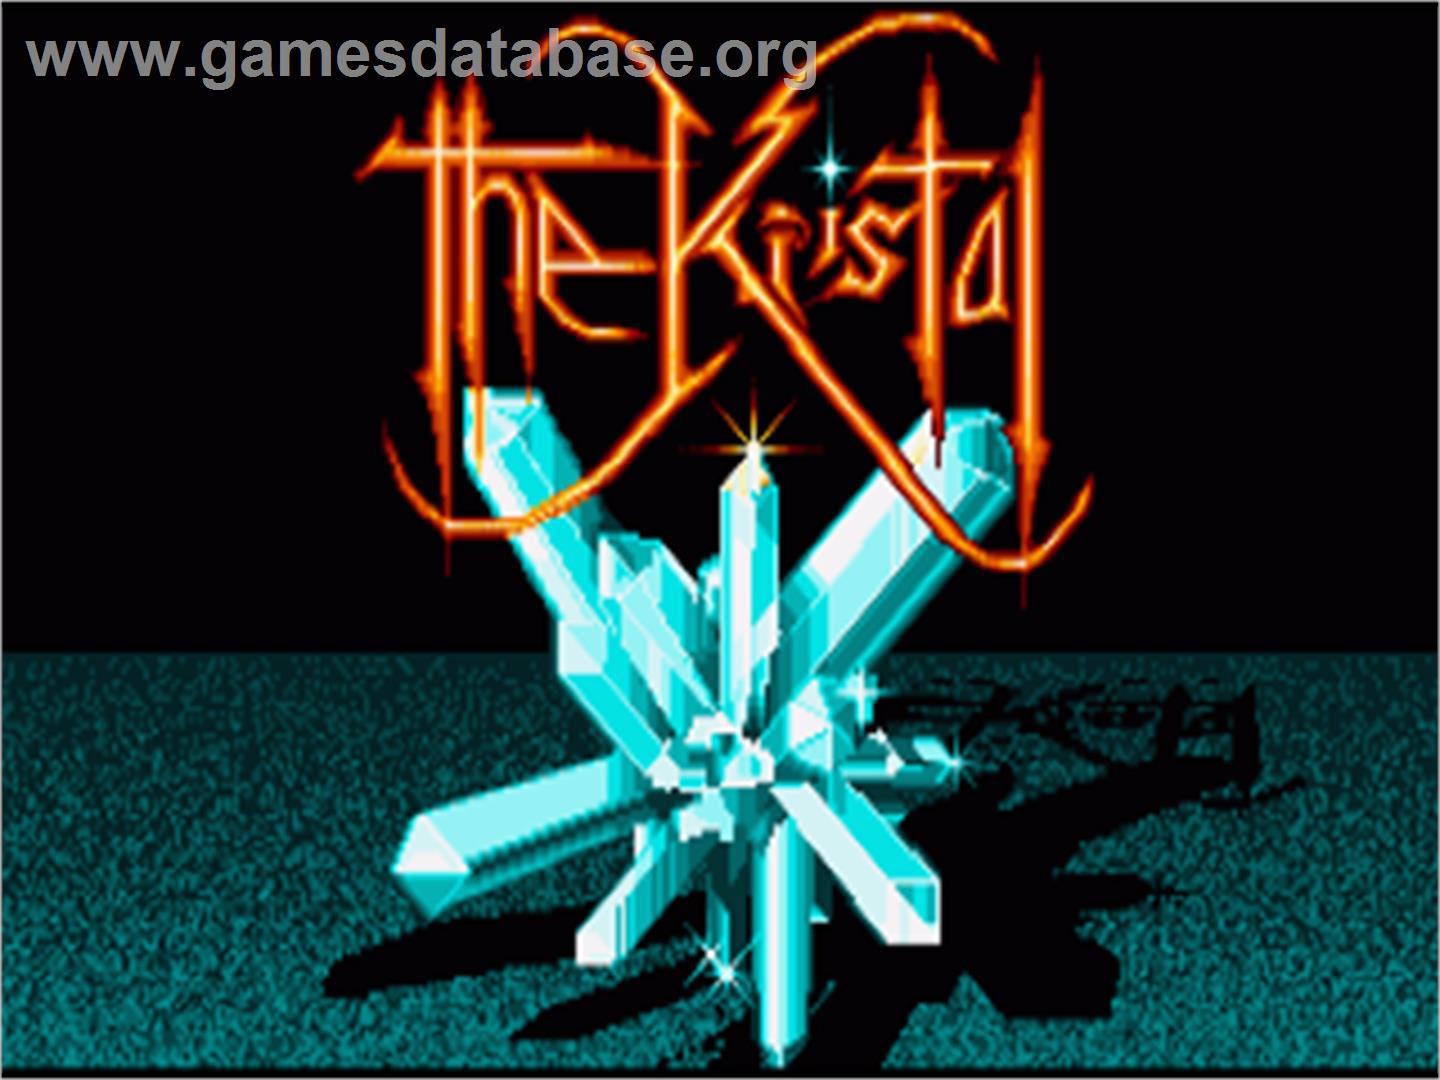 Kristal - Commodore Amiga - Artwork - Title Screen